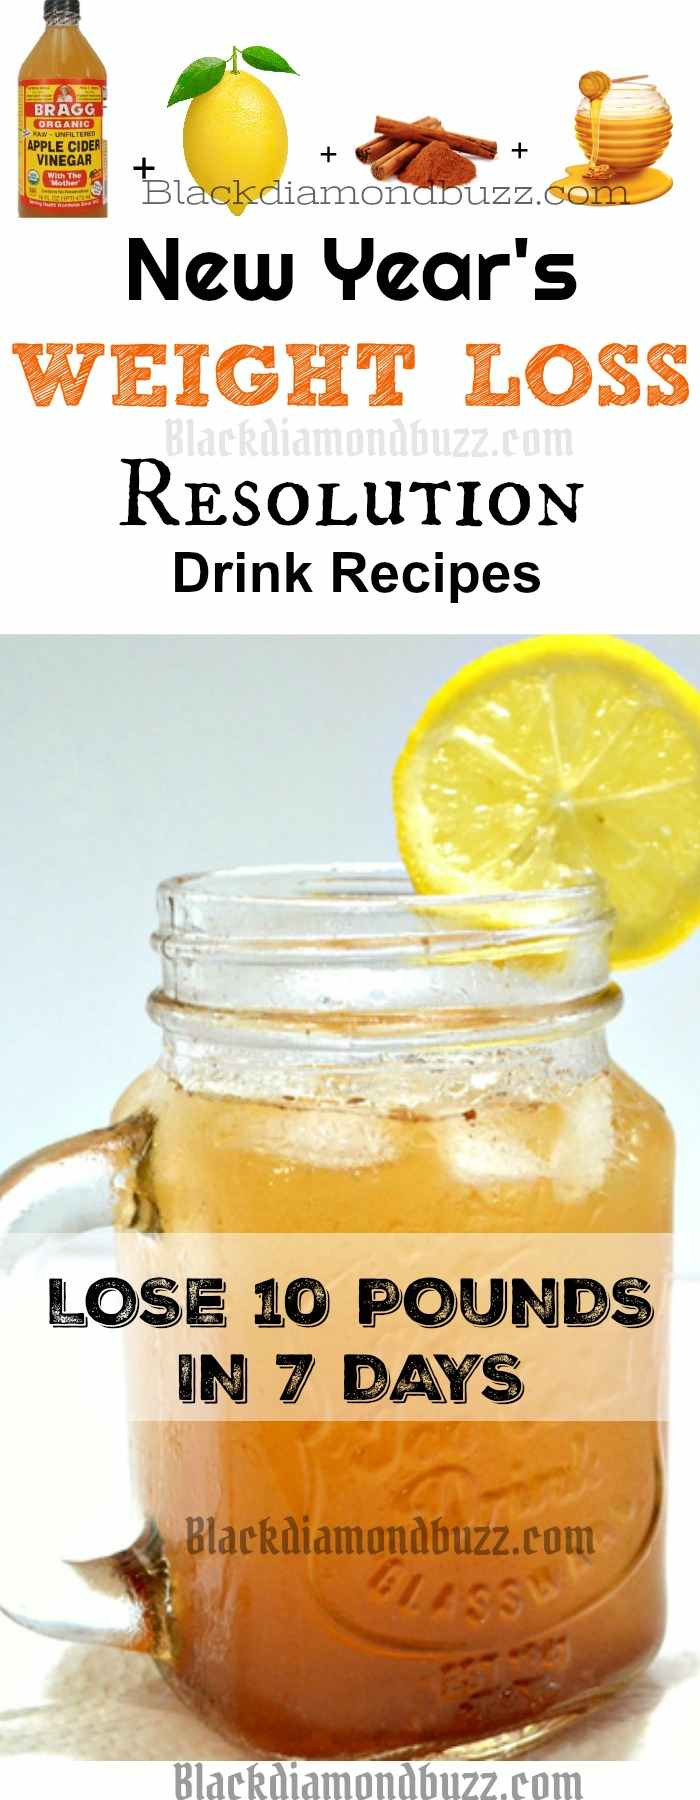 Apple Cider Vinegar Weight Loss Recipes
 DIY Apple Cider Vinegar Detox Drink Recipe for Fat Burning